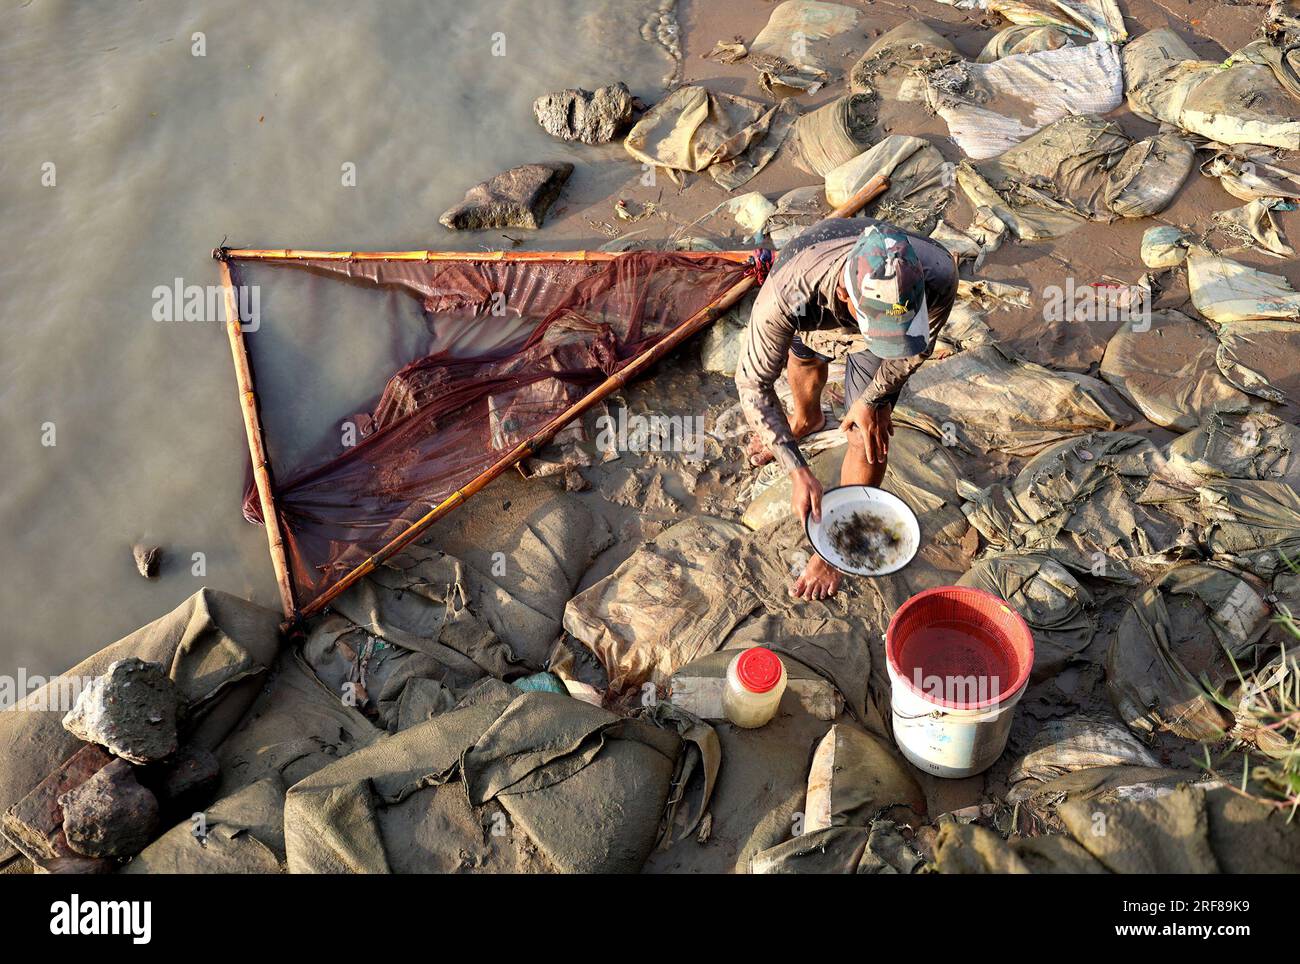 30. Juli 2023, Chittagong, Fluss Karnaphuli, Bangladesch: 1. August, 2023. Chittagong, Bangladesch: Im Gebiet Kalurghat des Flusses Karnaphuli in Bangladesch sammeln die Fischer Garnelenbraten in handgefertigten Netzen. ............. Das Ernten von Garnelen ist nach dem Fischereigesetz verboten. Trotz des illegalen Abbaus und Verkaufs von Braten.......................... Nach Ansicht von Fischerei- und Zoologieexperten gefährdet die Nutzung von Garnelenbrut auf diese Weise die biologische Vielfalt. Weil im Küstengebiet andere Arten von Braten durch die Sammler starben. (Kreditbild: © Mohammed Stockfoto